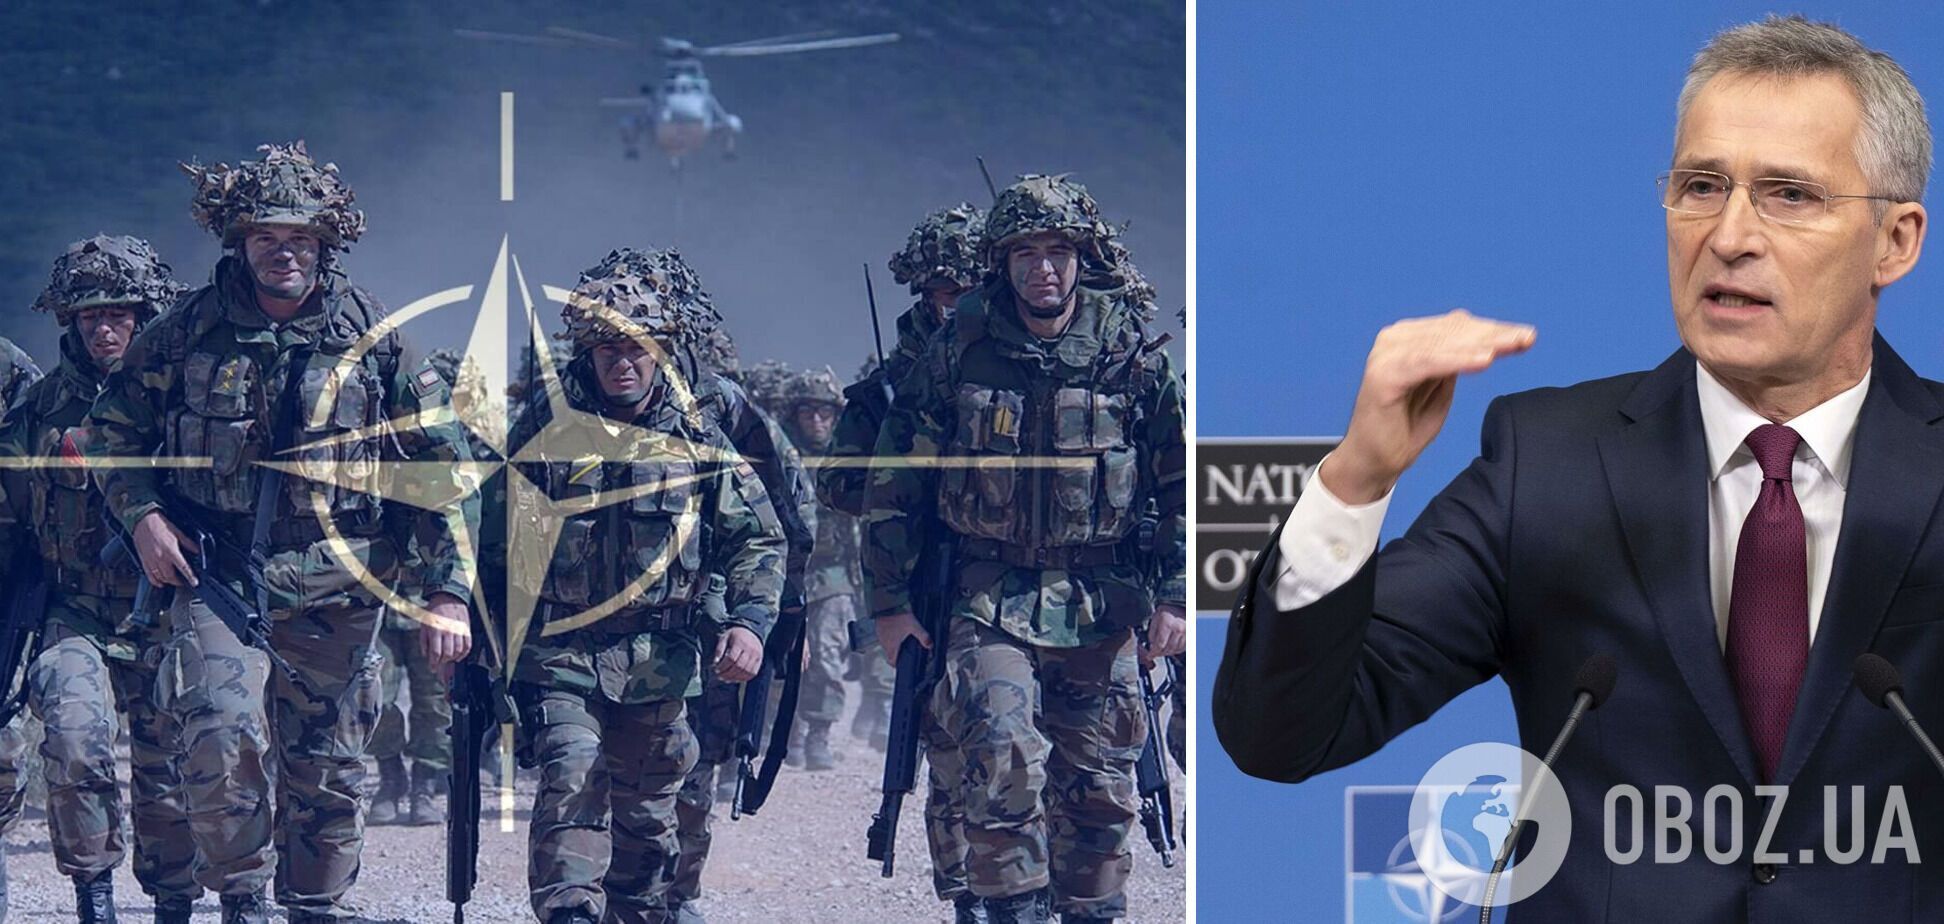 НАТО осуществляет самое масштабное расширение общей системы обороны, – Столтенберг